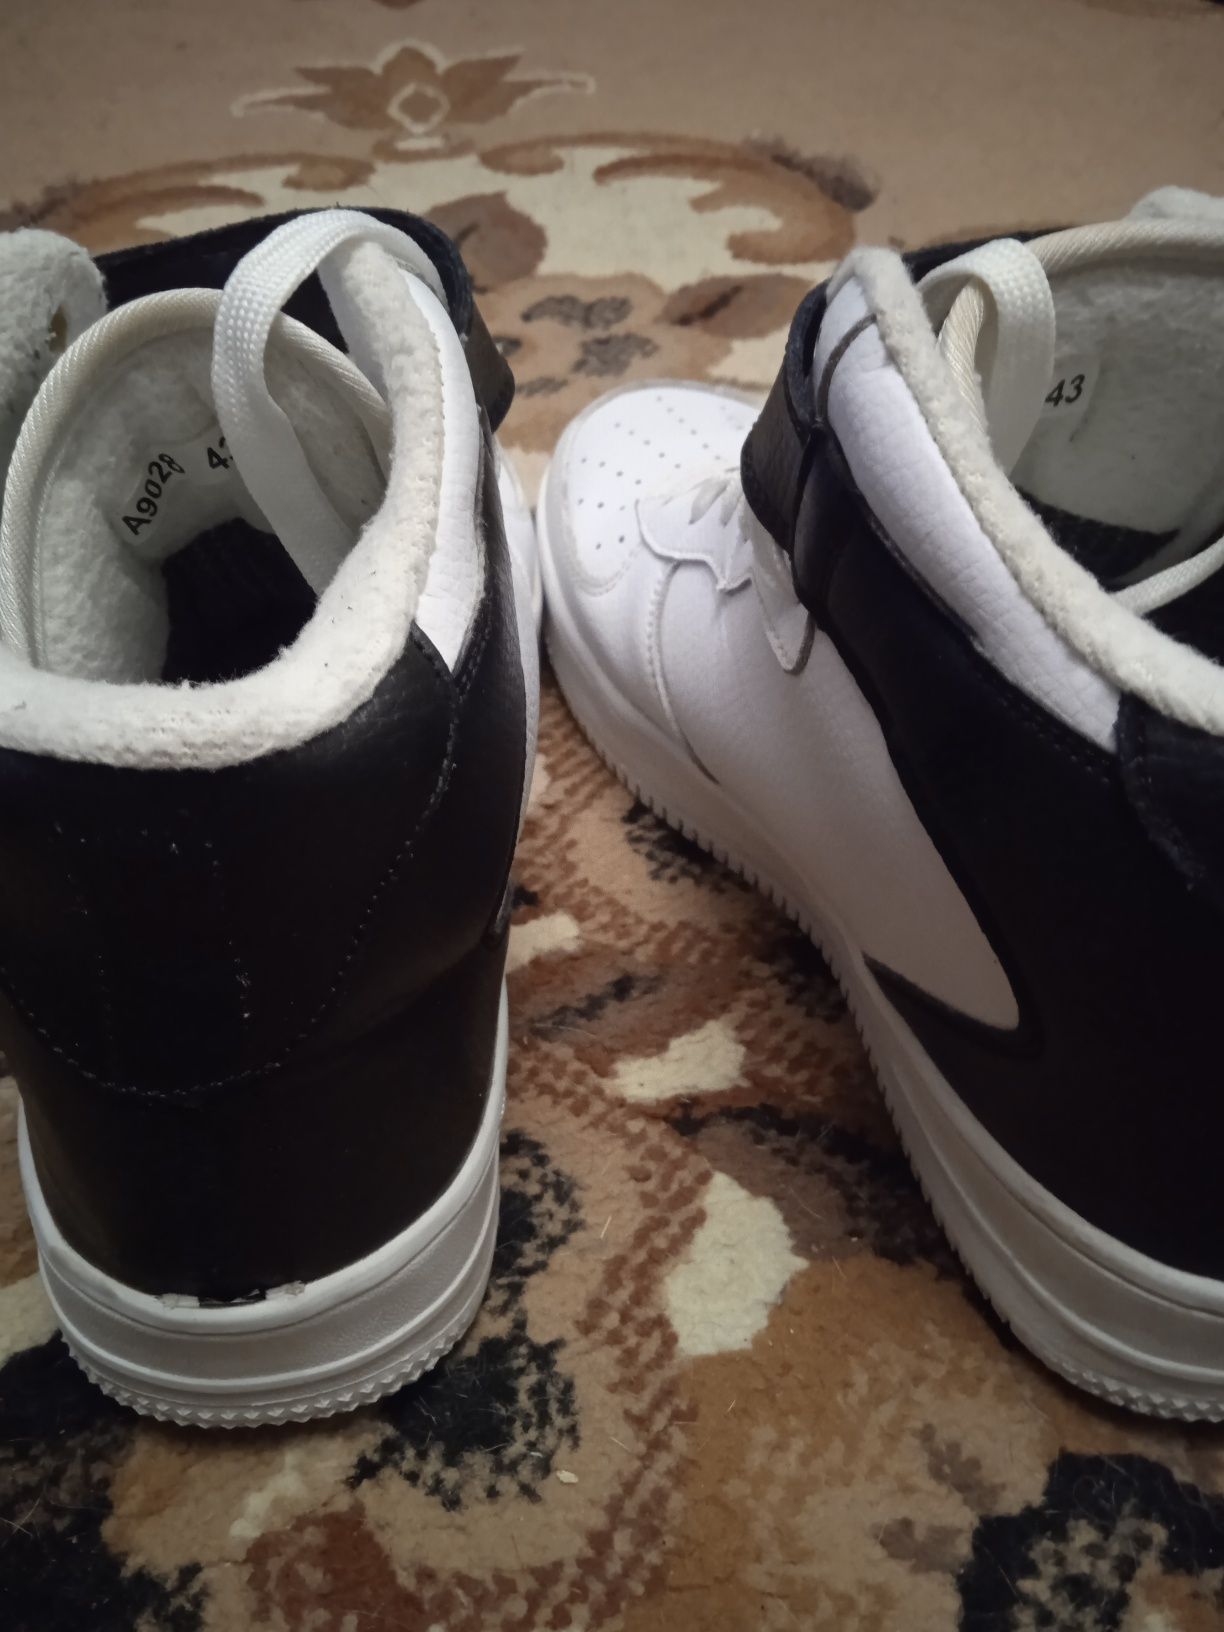 Ботинки(м.),Nike air,р.43,цвет белый,с черными вставками,на